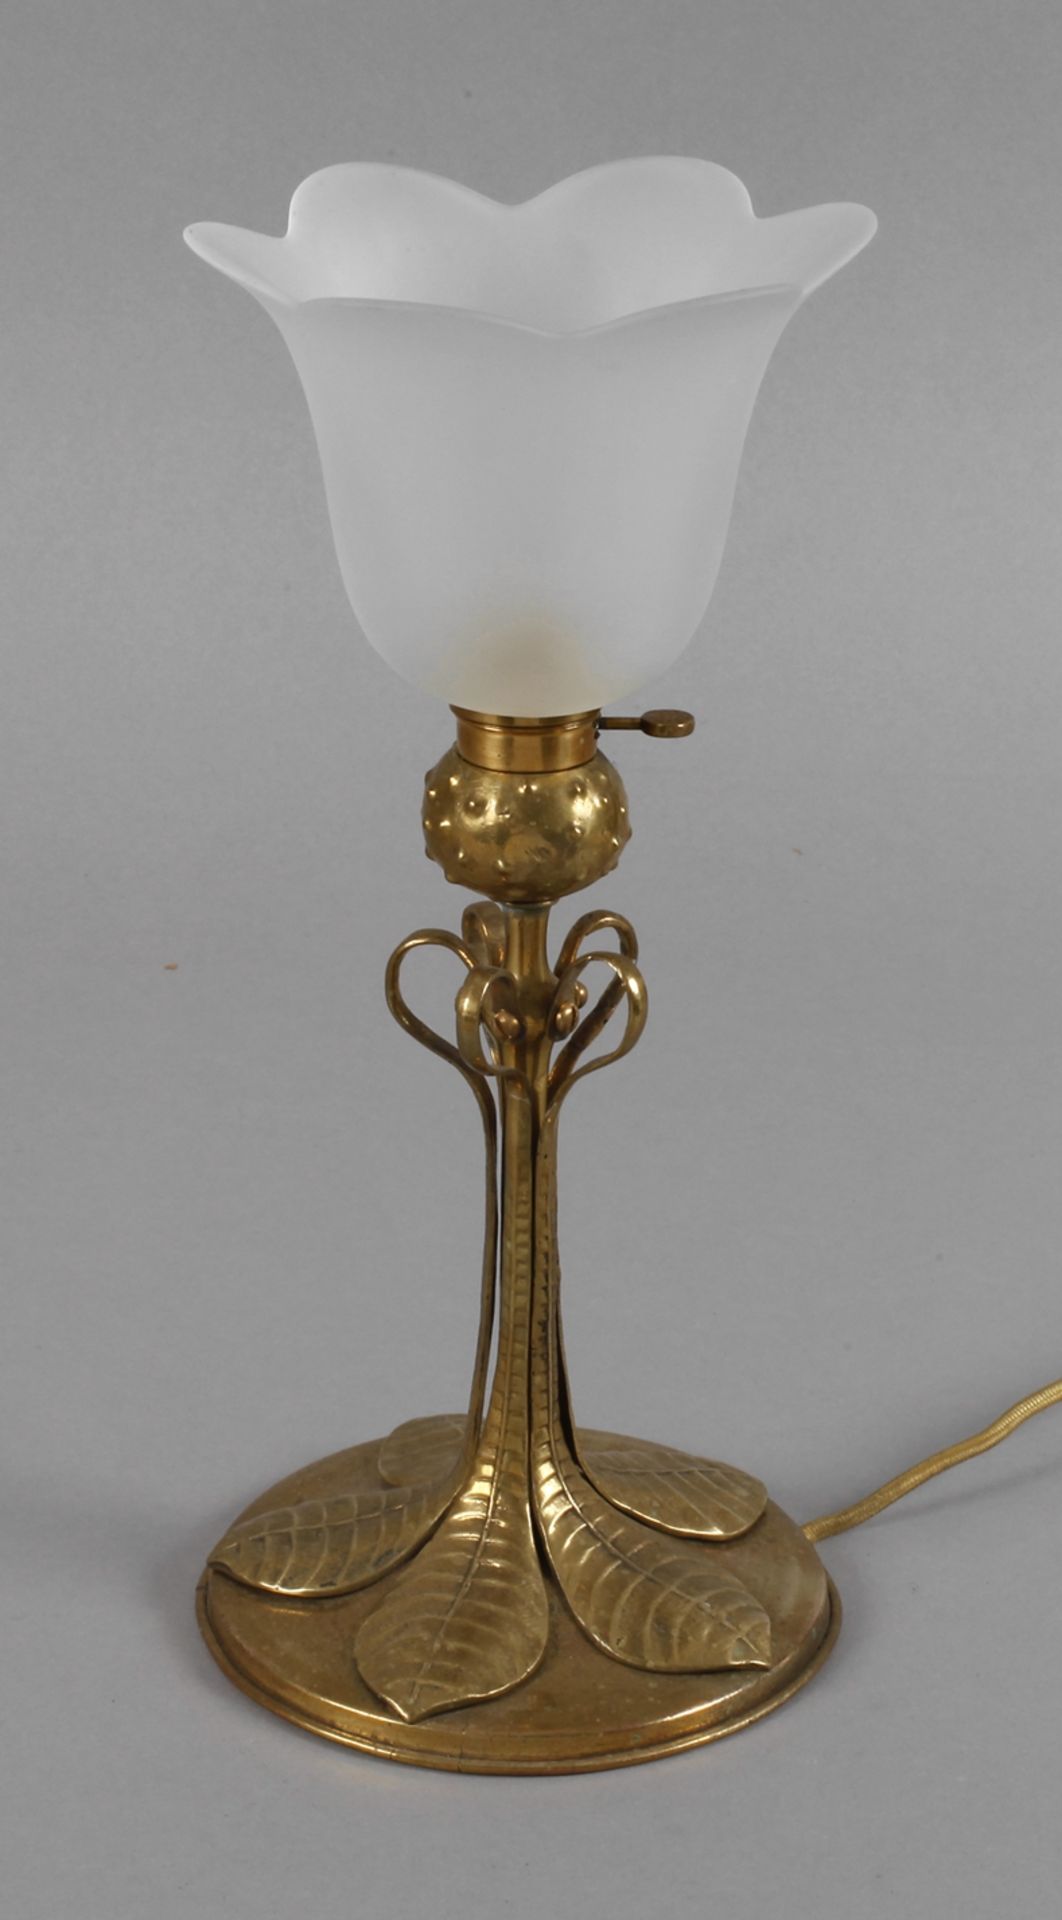 Tischlampe Anfang 20. Jh., Messing massiv, teils getrieben, Rundfuß mit plastischem